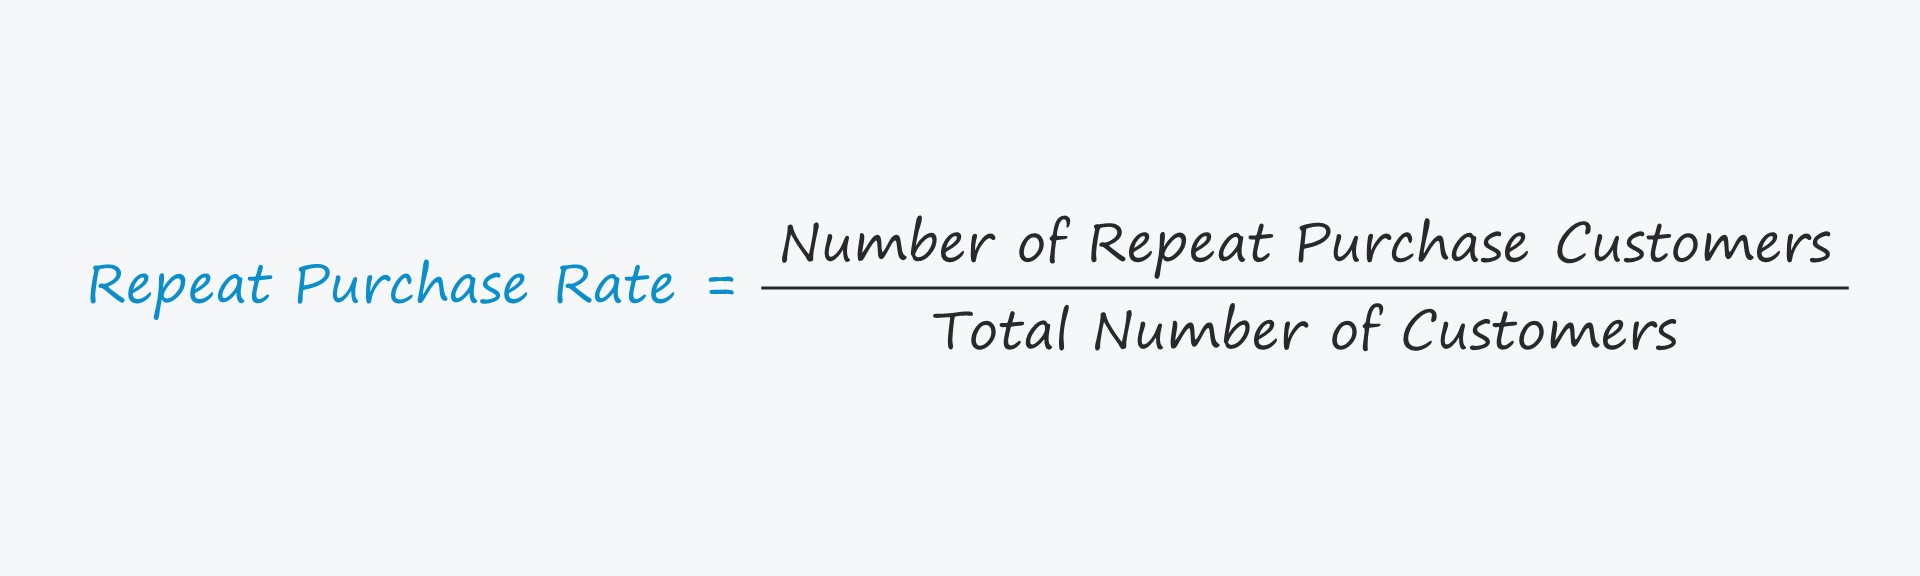 Tasa de repetición de compra | Fórmula + Calculadora